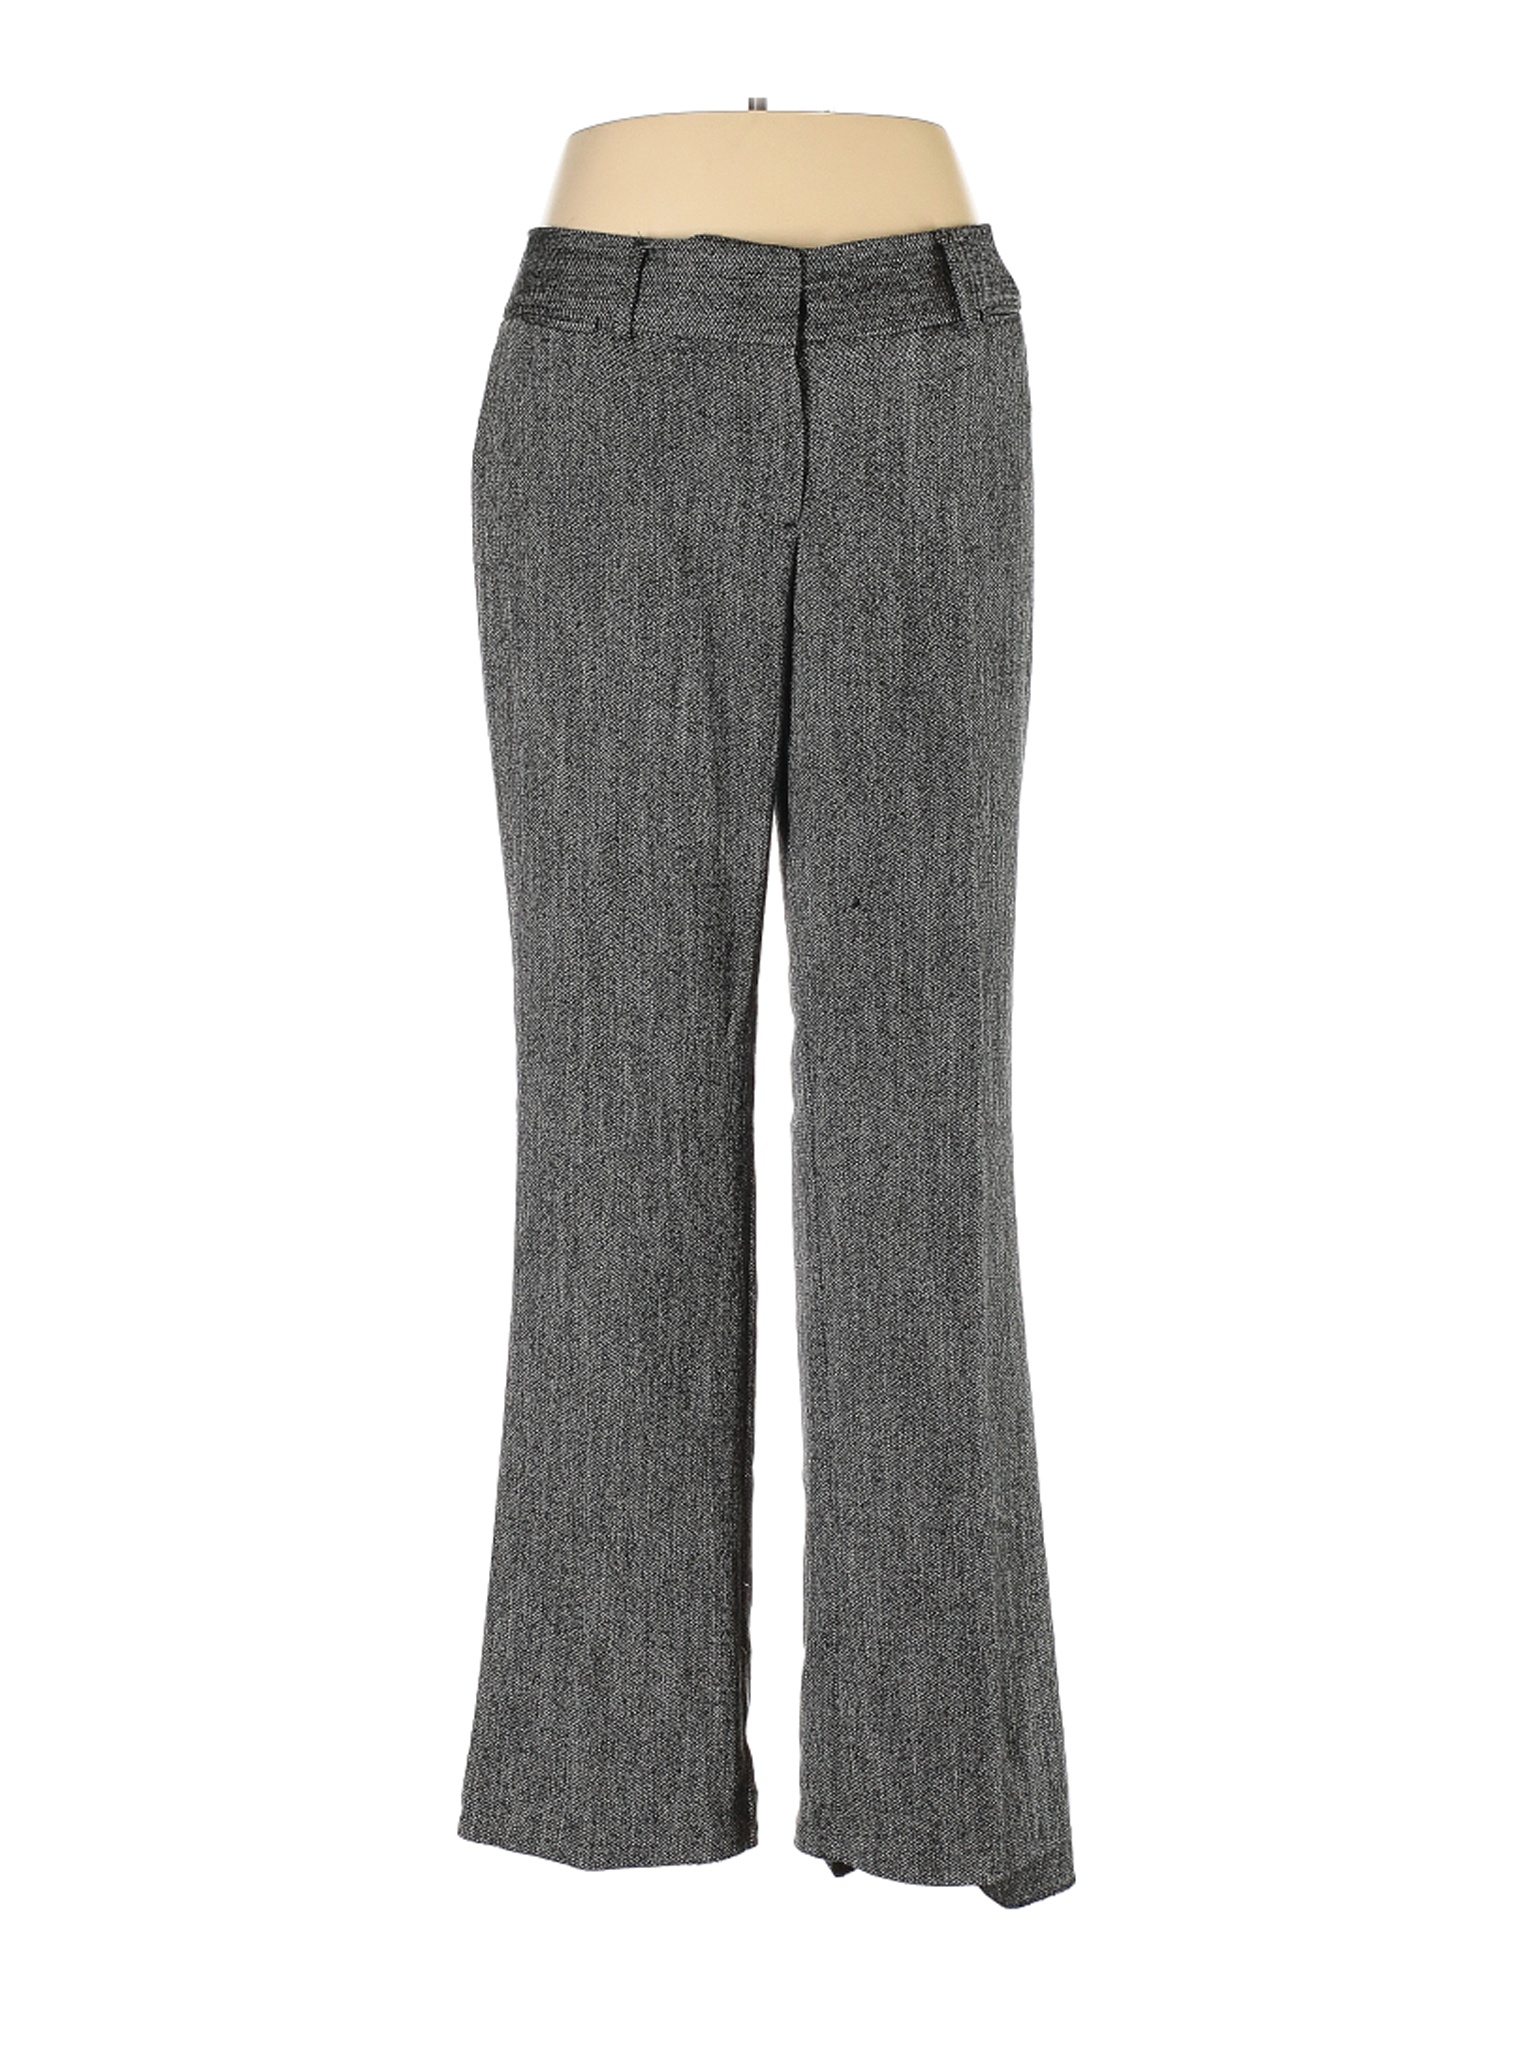 Ann Taylor LOFT Women Gray Dress Pants 10 | eBay